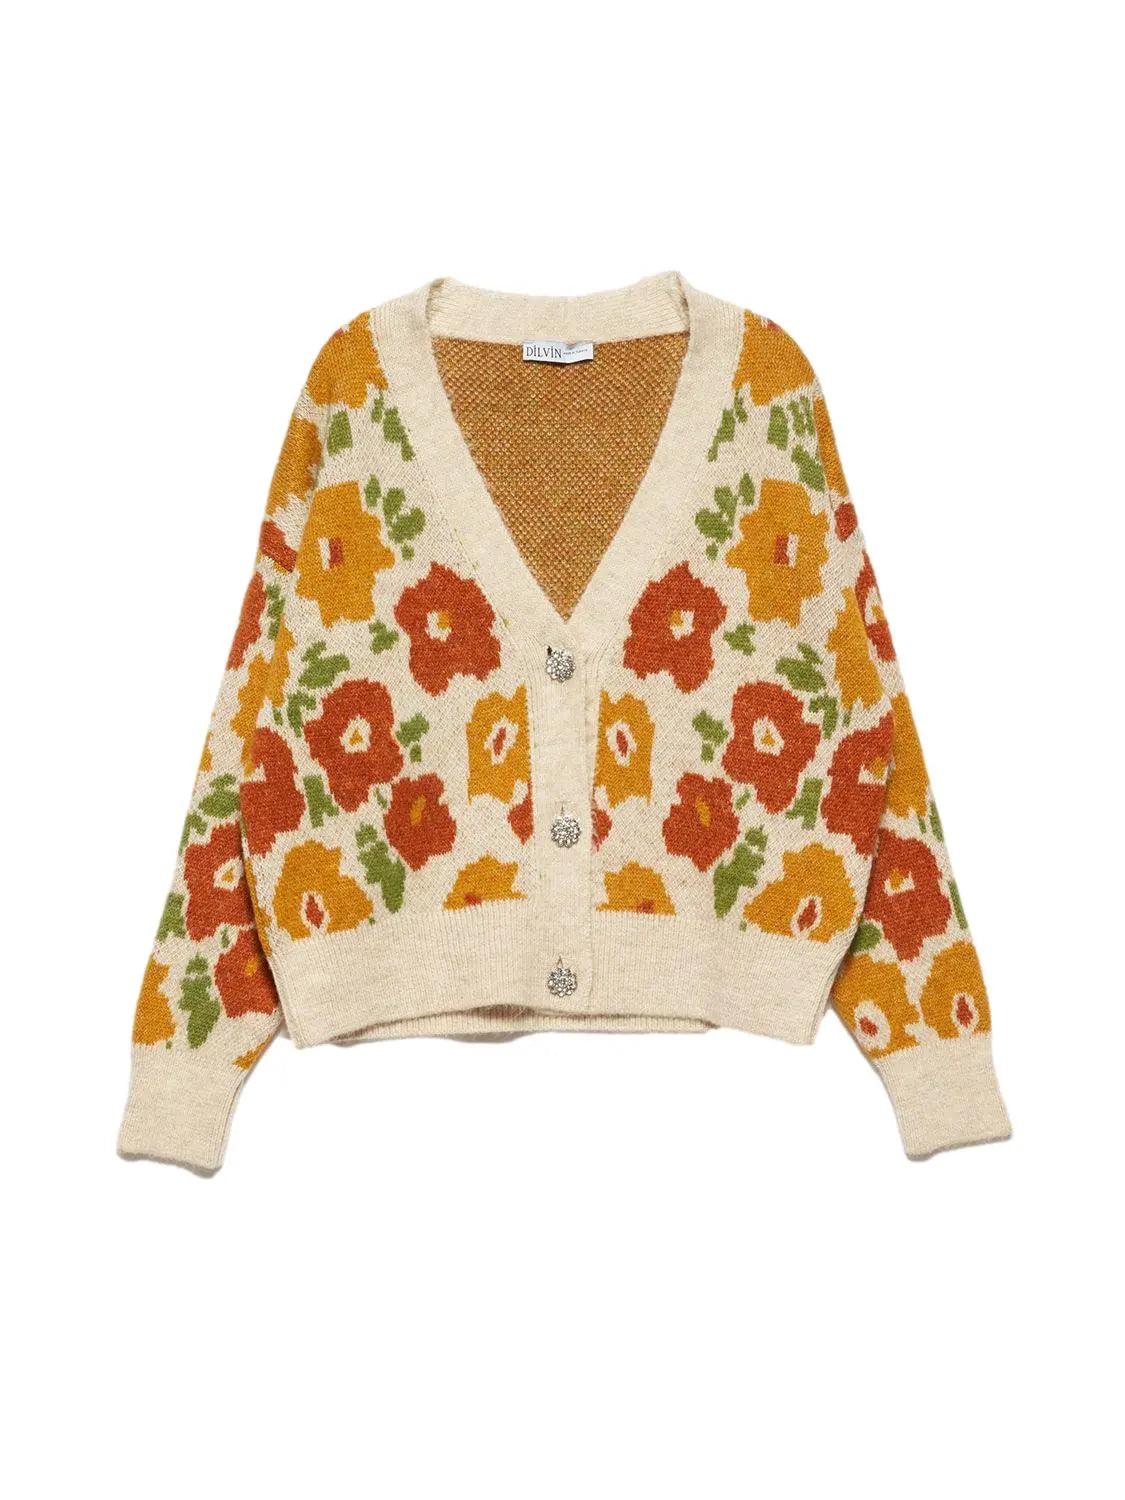 V-Neck Floral Patterned Sweater Cardigan Mustard / One Size ZEFASH